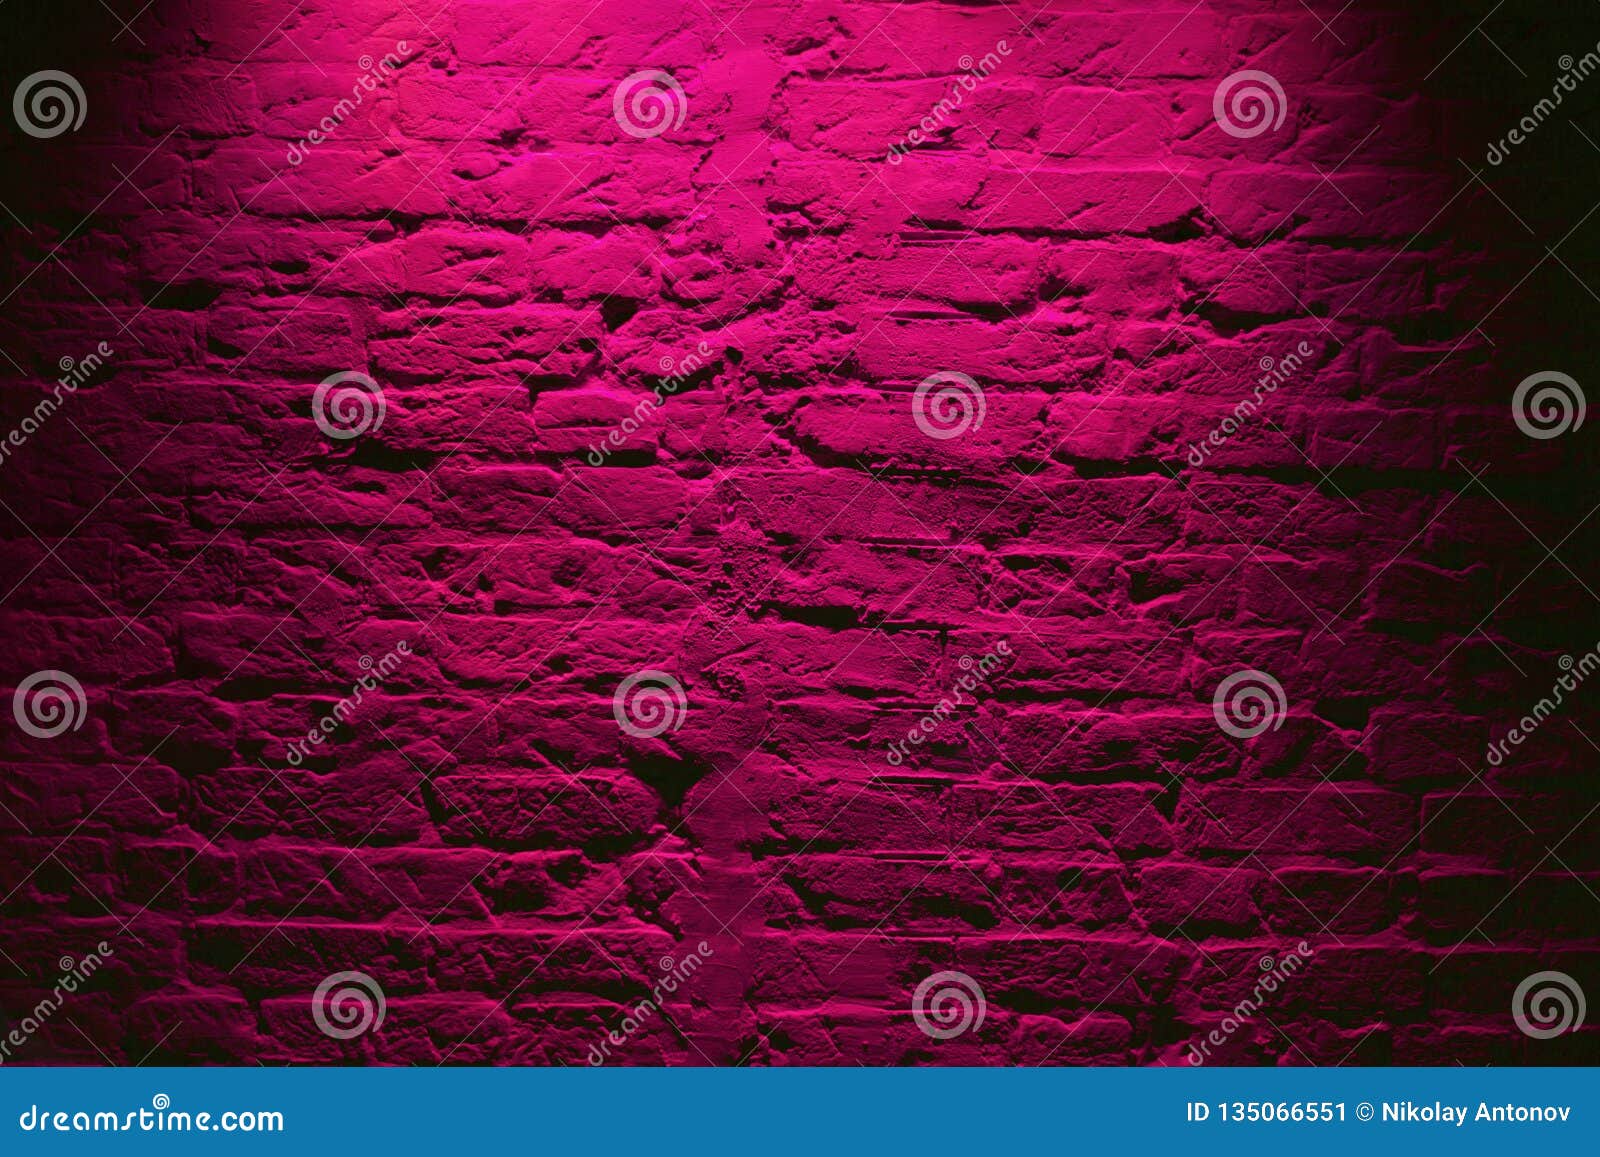 grunge neon pink brick wall texture background. magenta colored brick wall texture architecture pattern